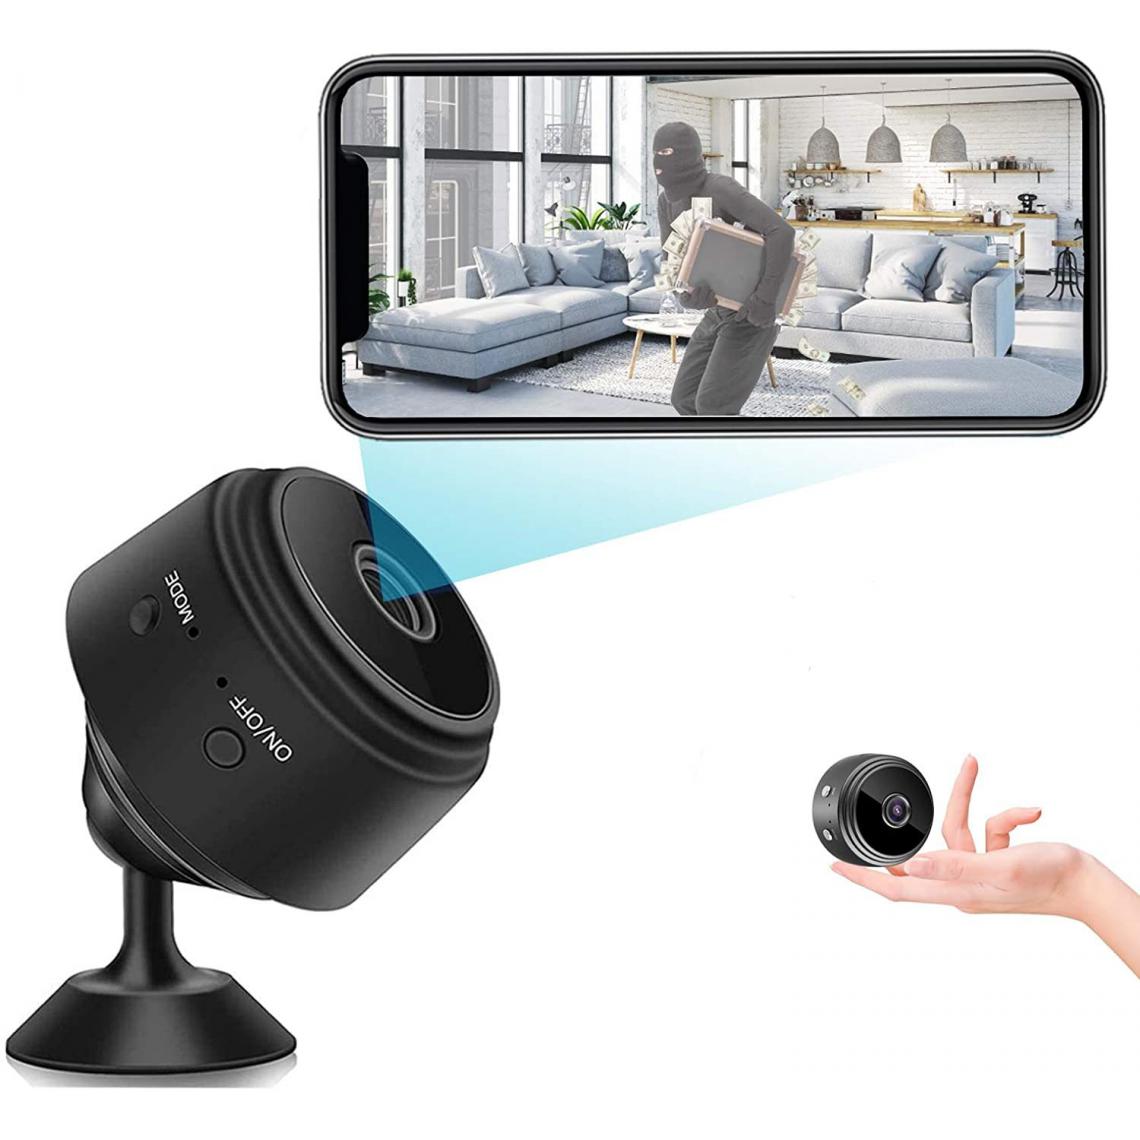 Chrono - Caméra cachée sans Fil Mini caméra Espion WiFi capteur Automatique de Vision Nocturne/Mouvement, enregistreur vidéo HD 1080P pour la Surveillance,pour iPhone/téléphone Android/iPad/PC(noir) - Autres accessoires smartphone